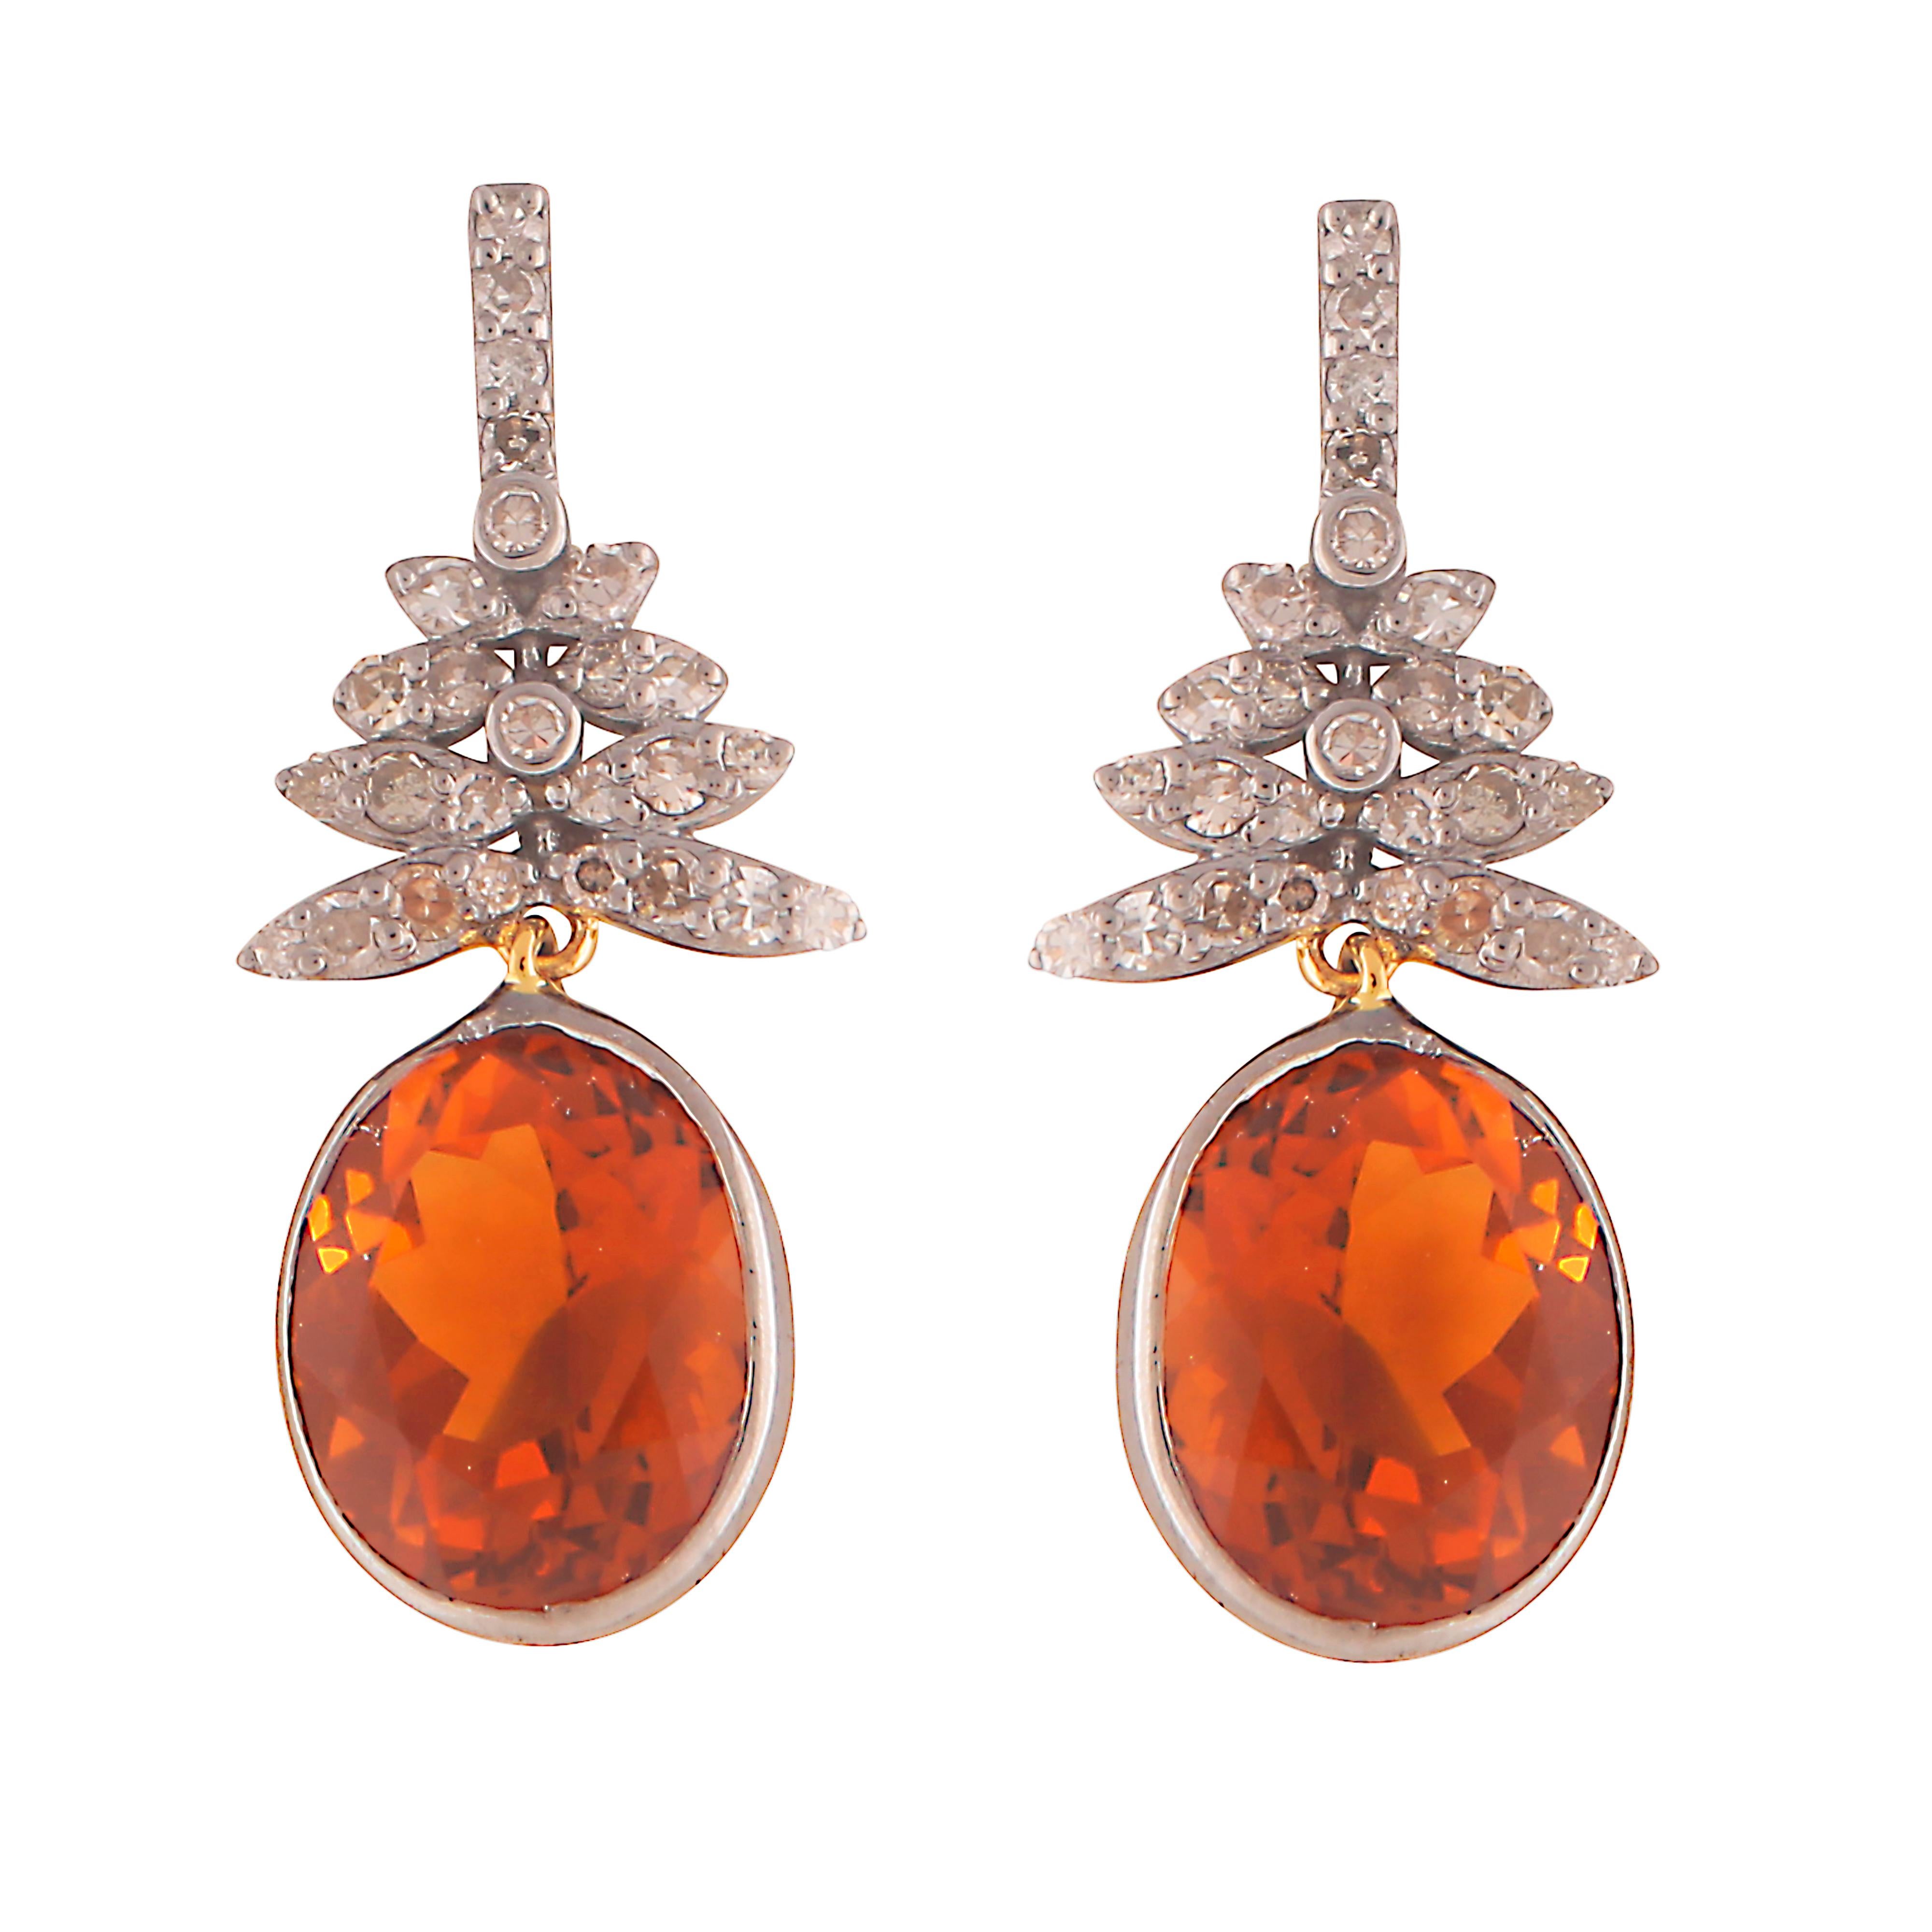 1920's earrings